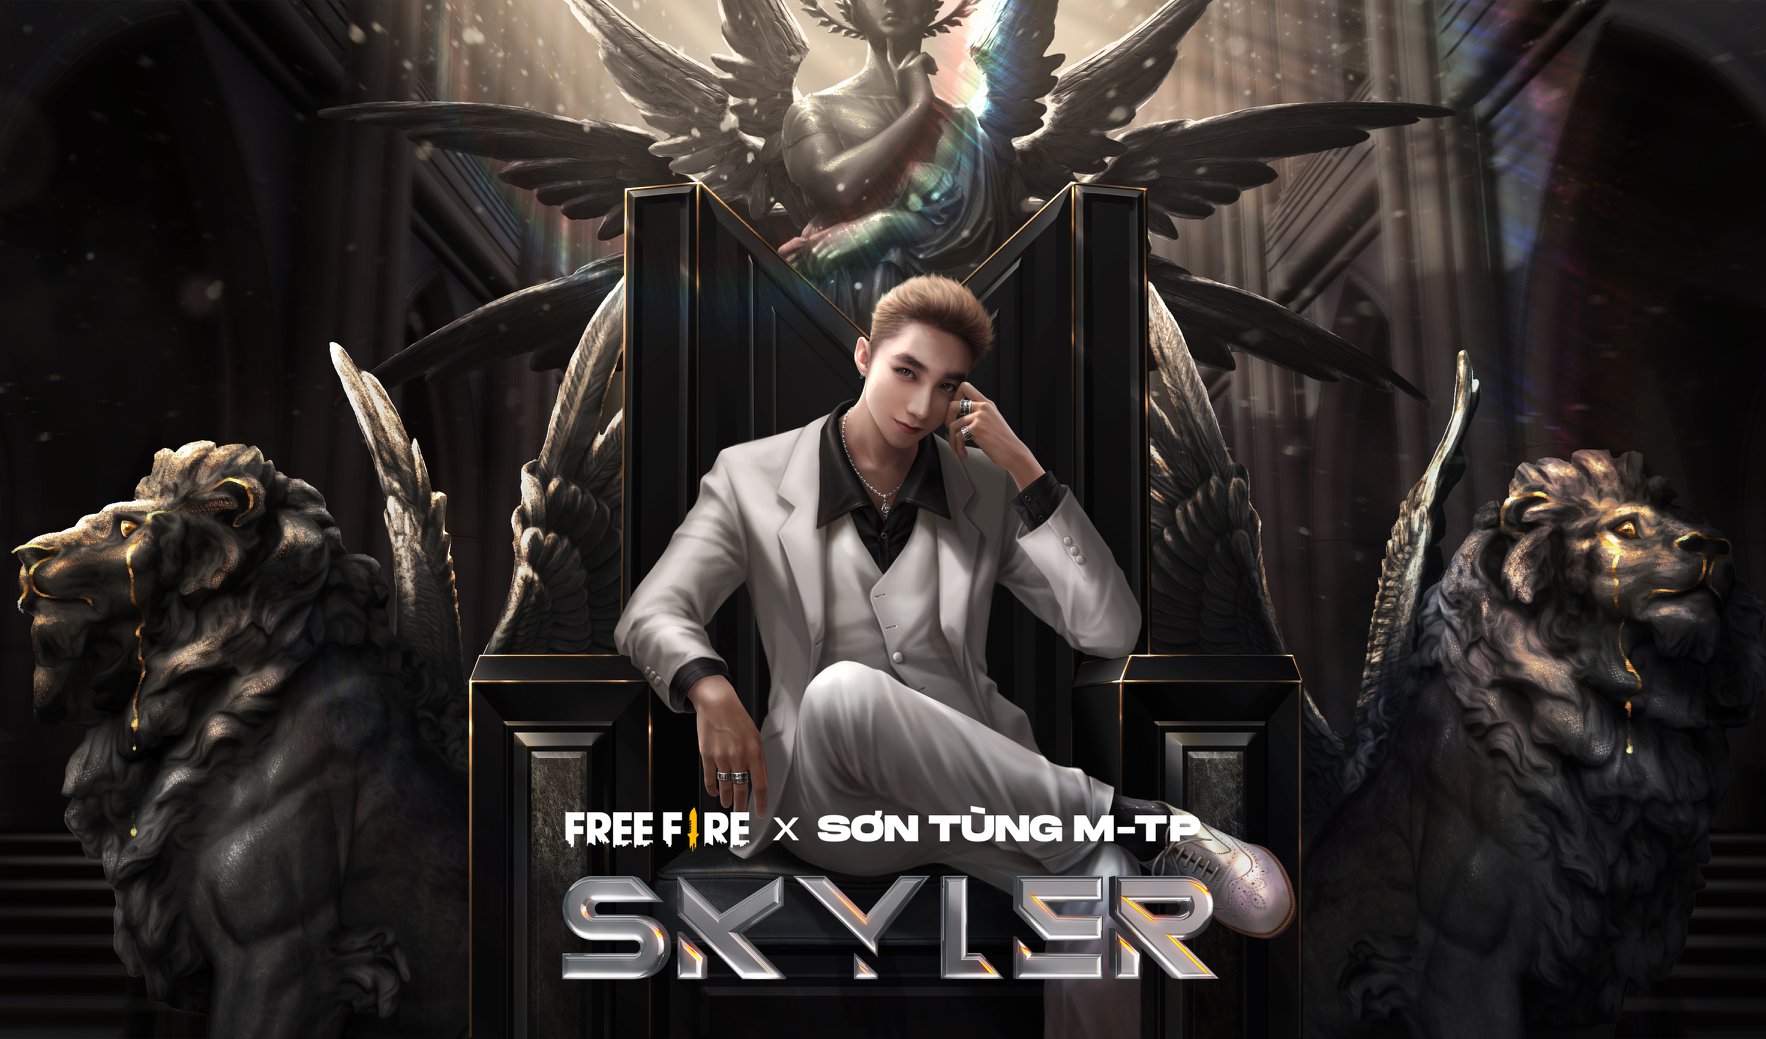 Free Fire là một trò chơi đầy hứng khởi và Skyler là nhân vật cực kỳ phong cách. Hãy xem hình ảnh để hiểu tại sao các game thủ đang say mê trò chơi này!